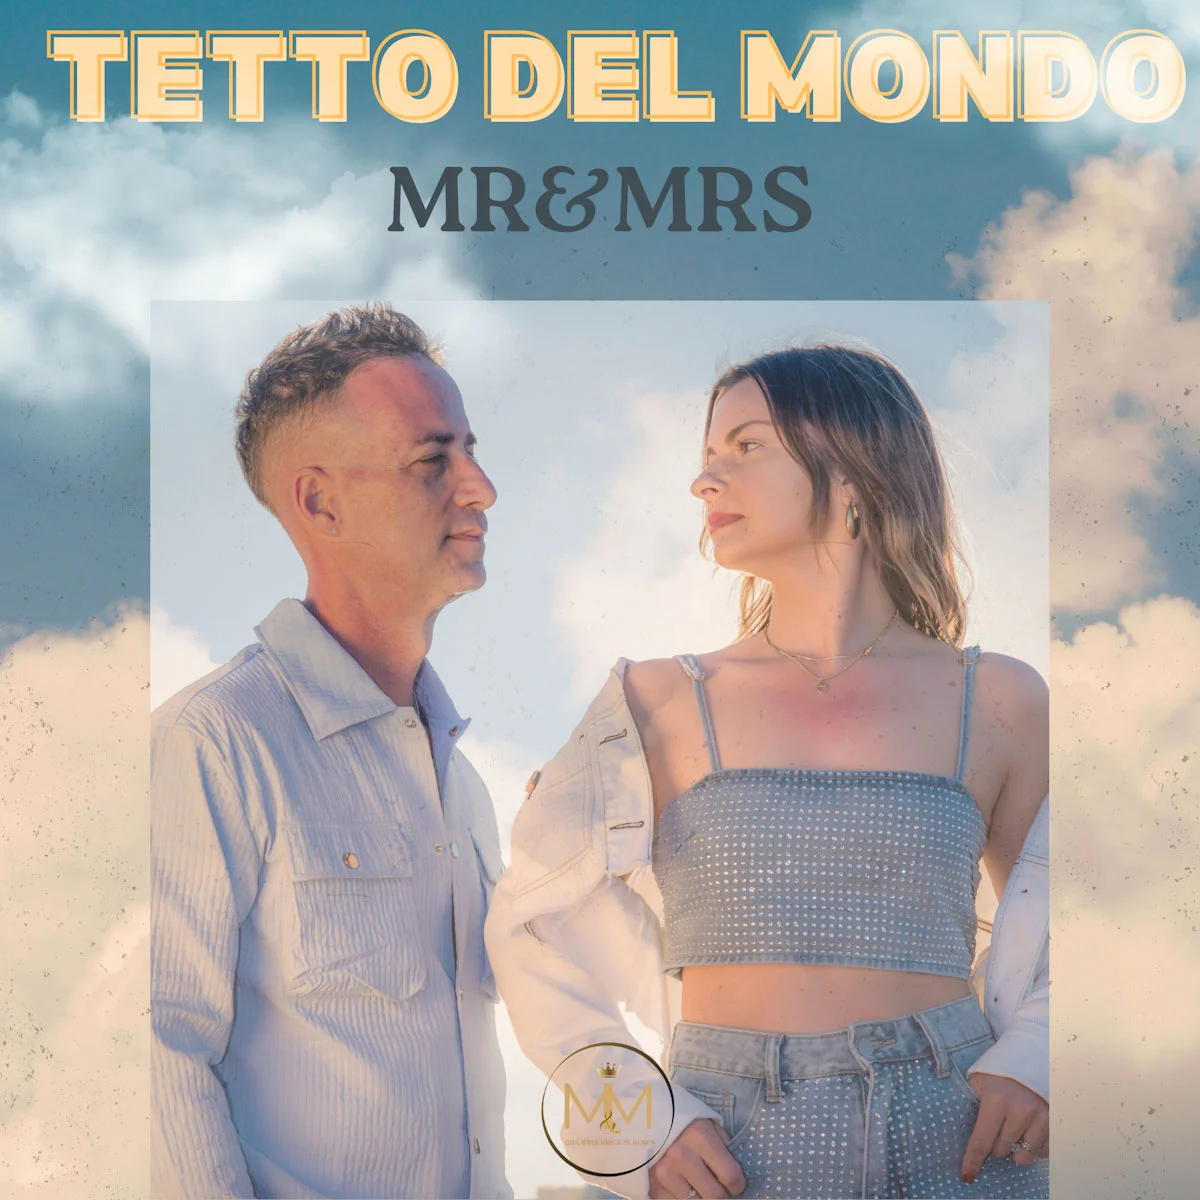 MR&MRS, da domani 3 maggio fuori “TETTO DEL MONDO”, il nuovo singolo